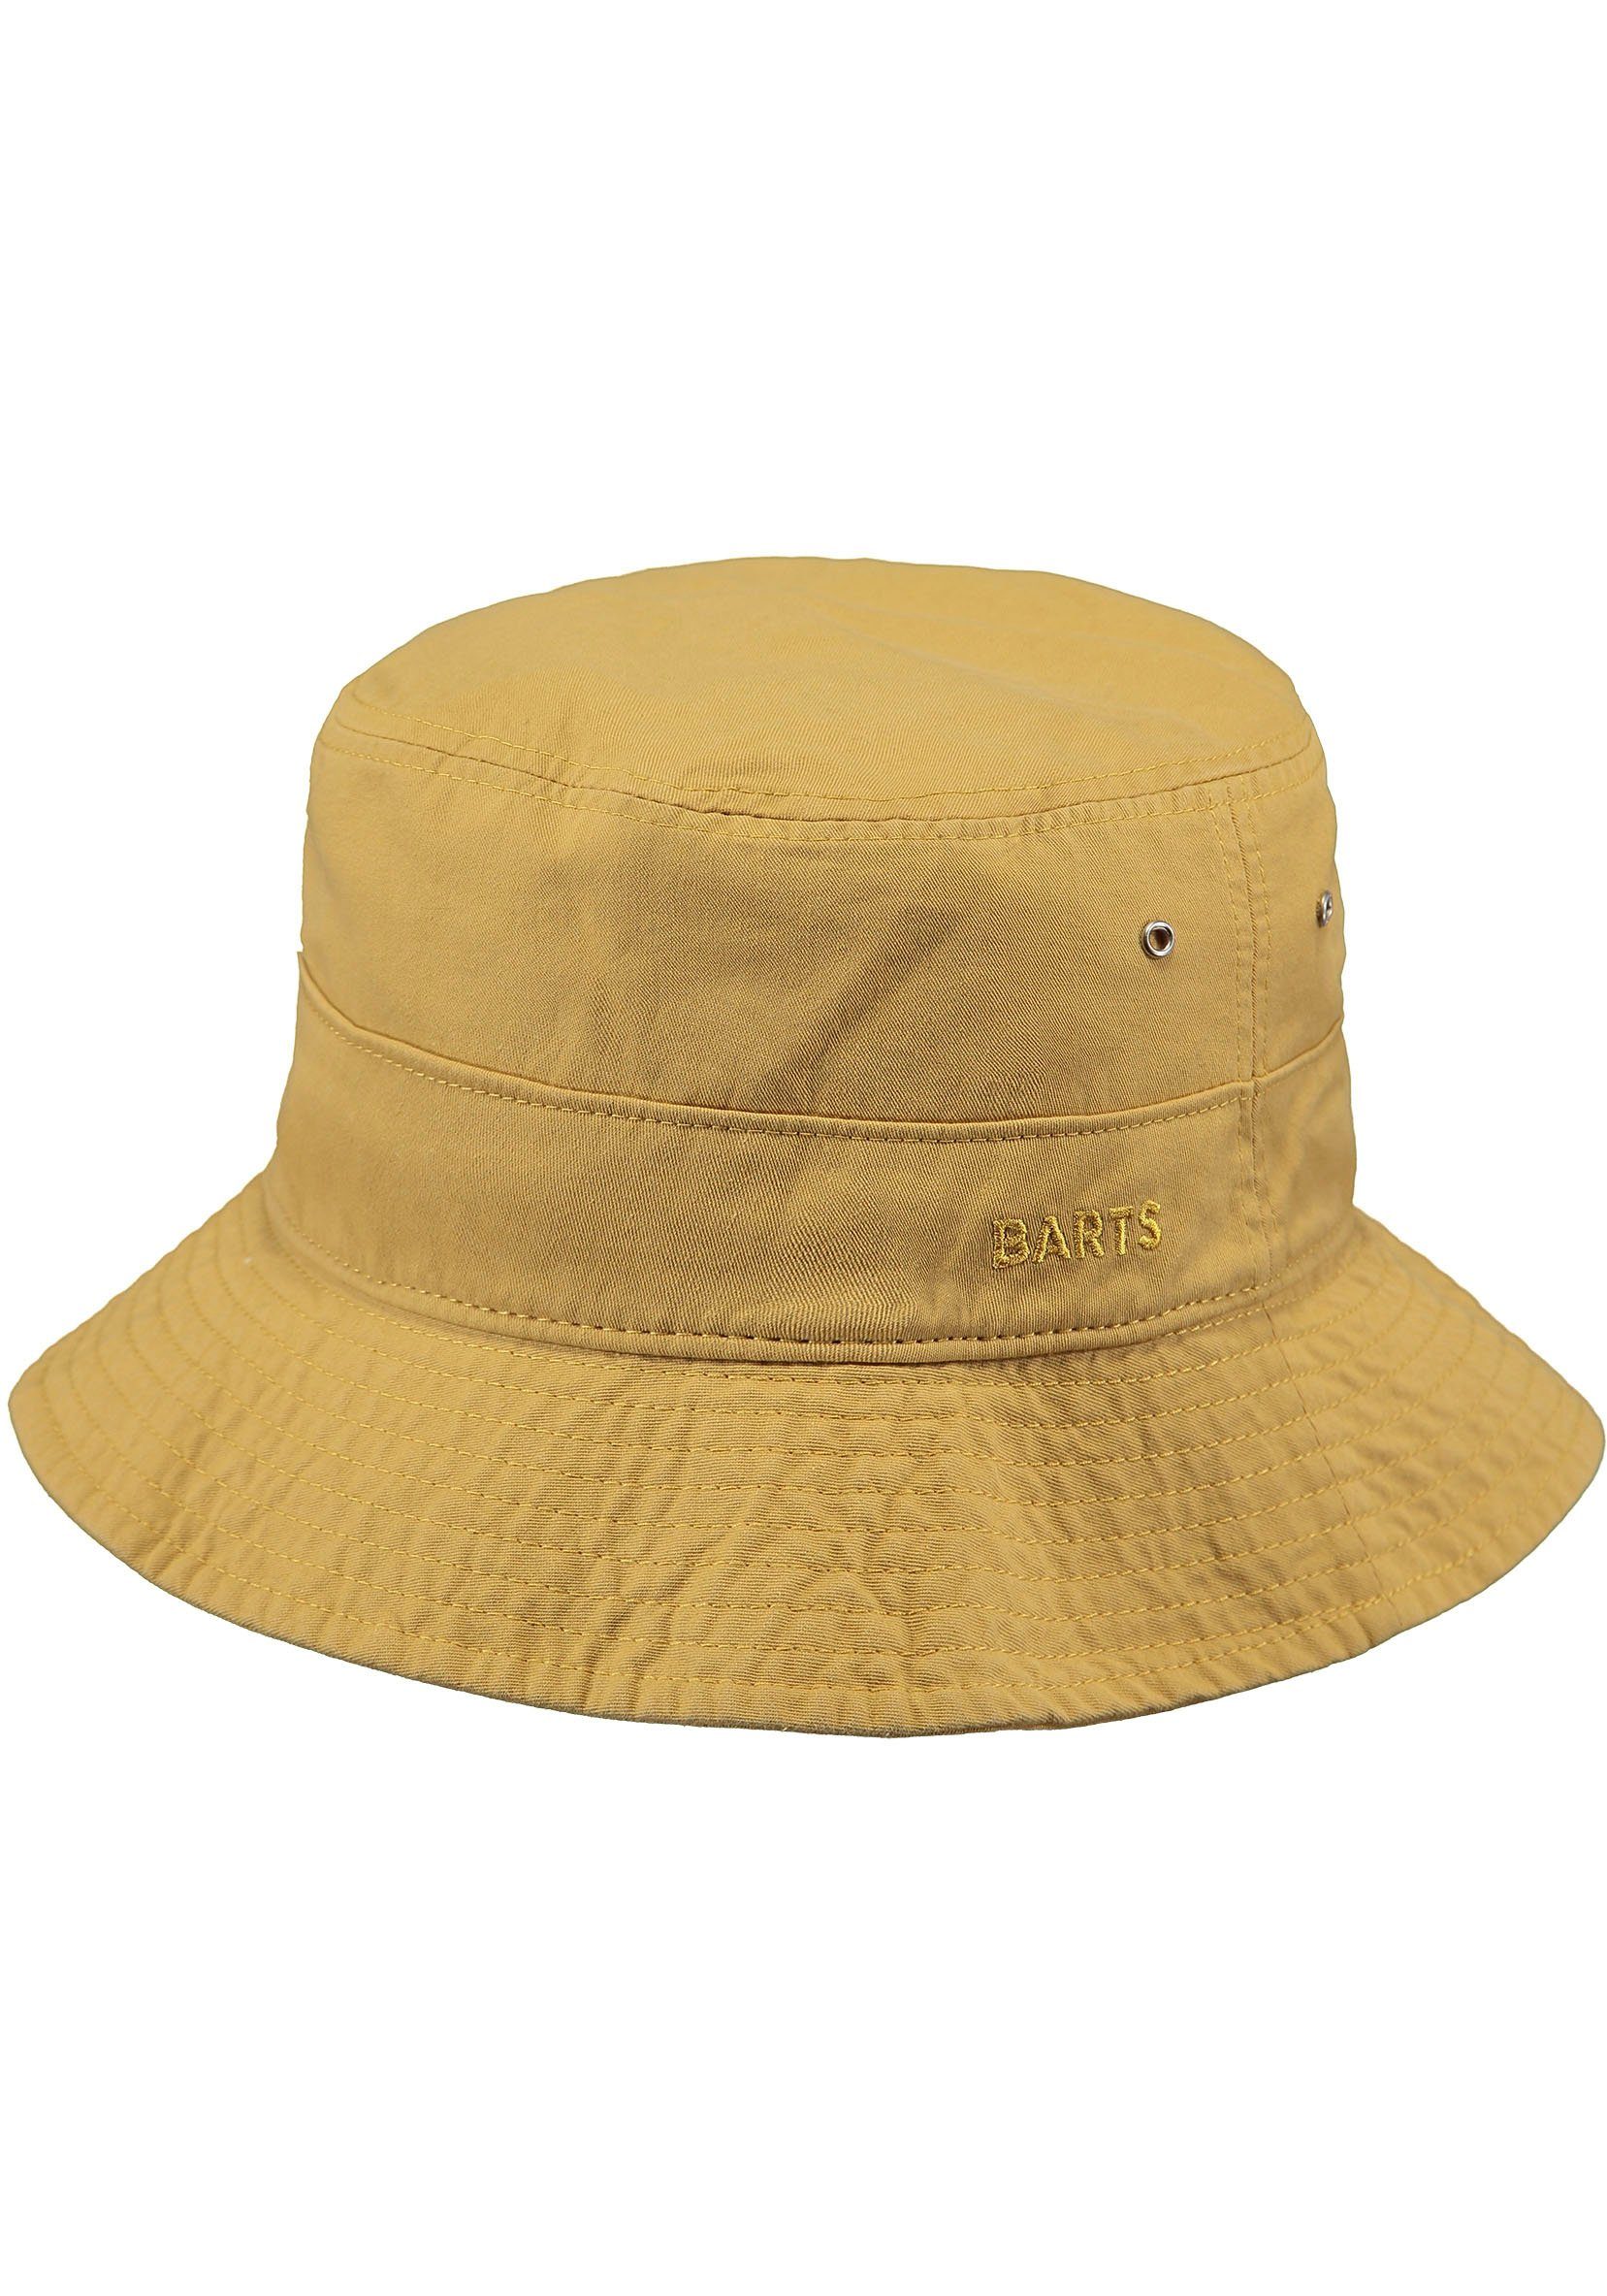 Barts Fischerhut Calomba gelb Hat